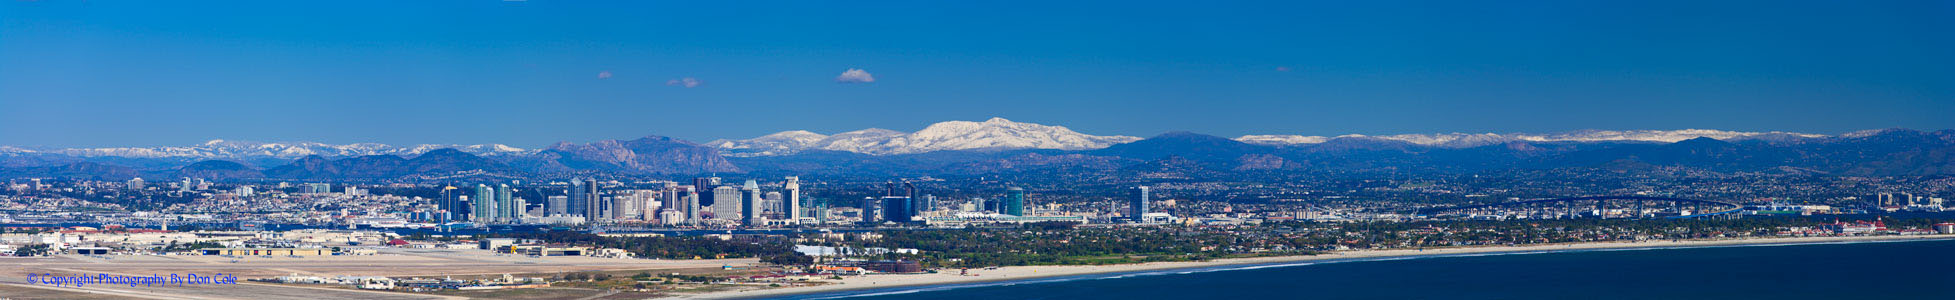 San Diego's Snowcapped Mountains